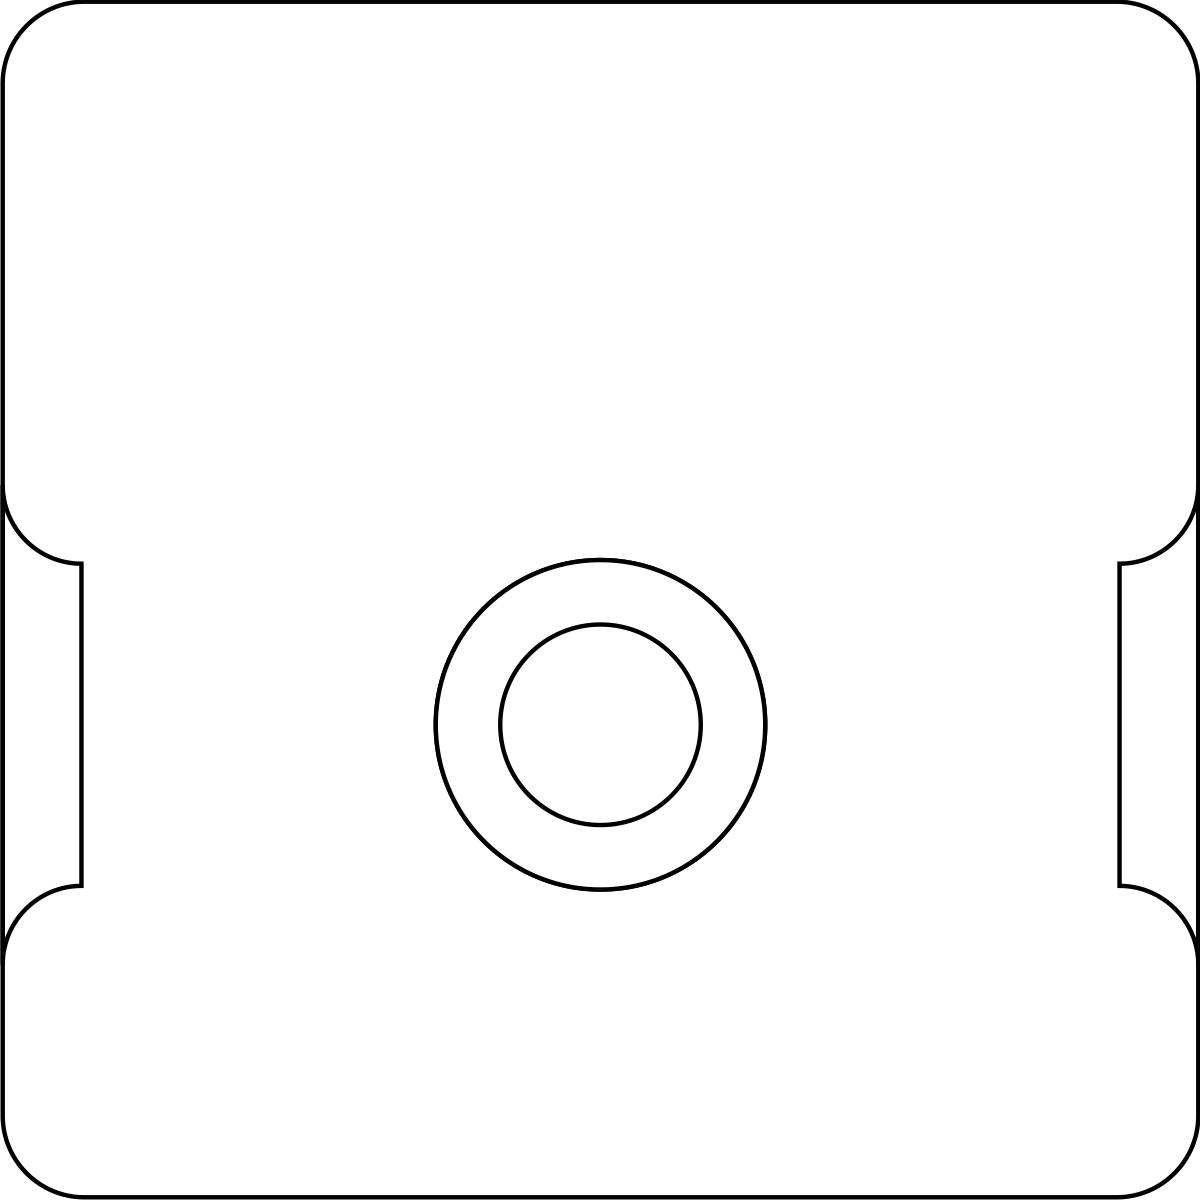 Kassette für 5,2cm Streifen, Format: 16,7x16,7cm